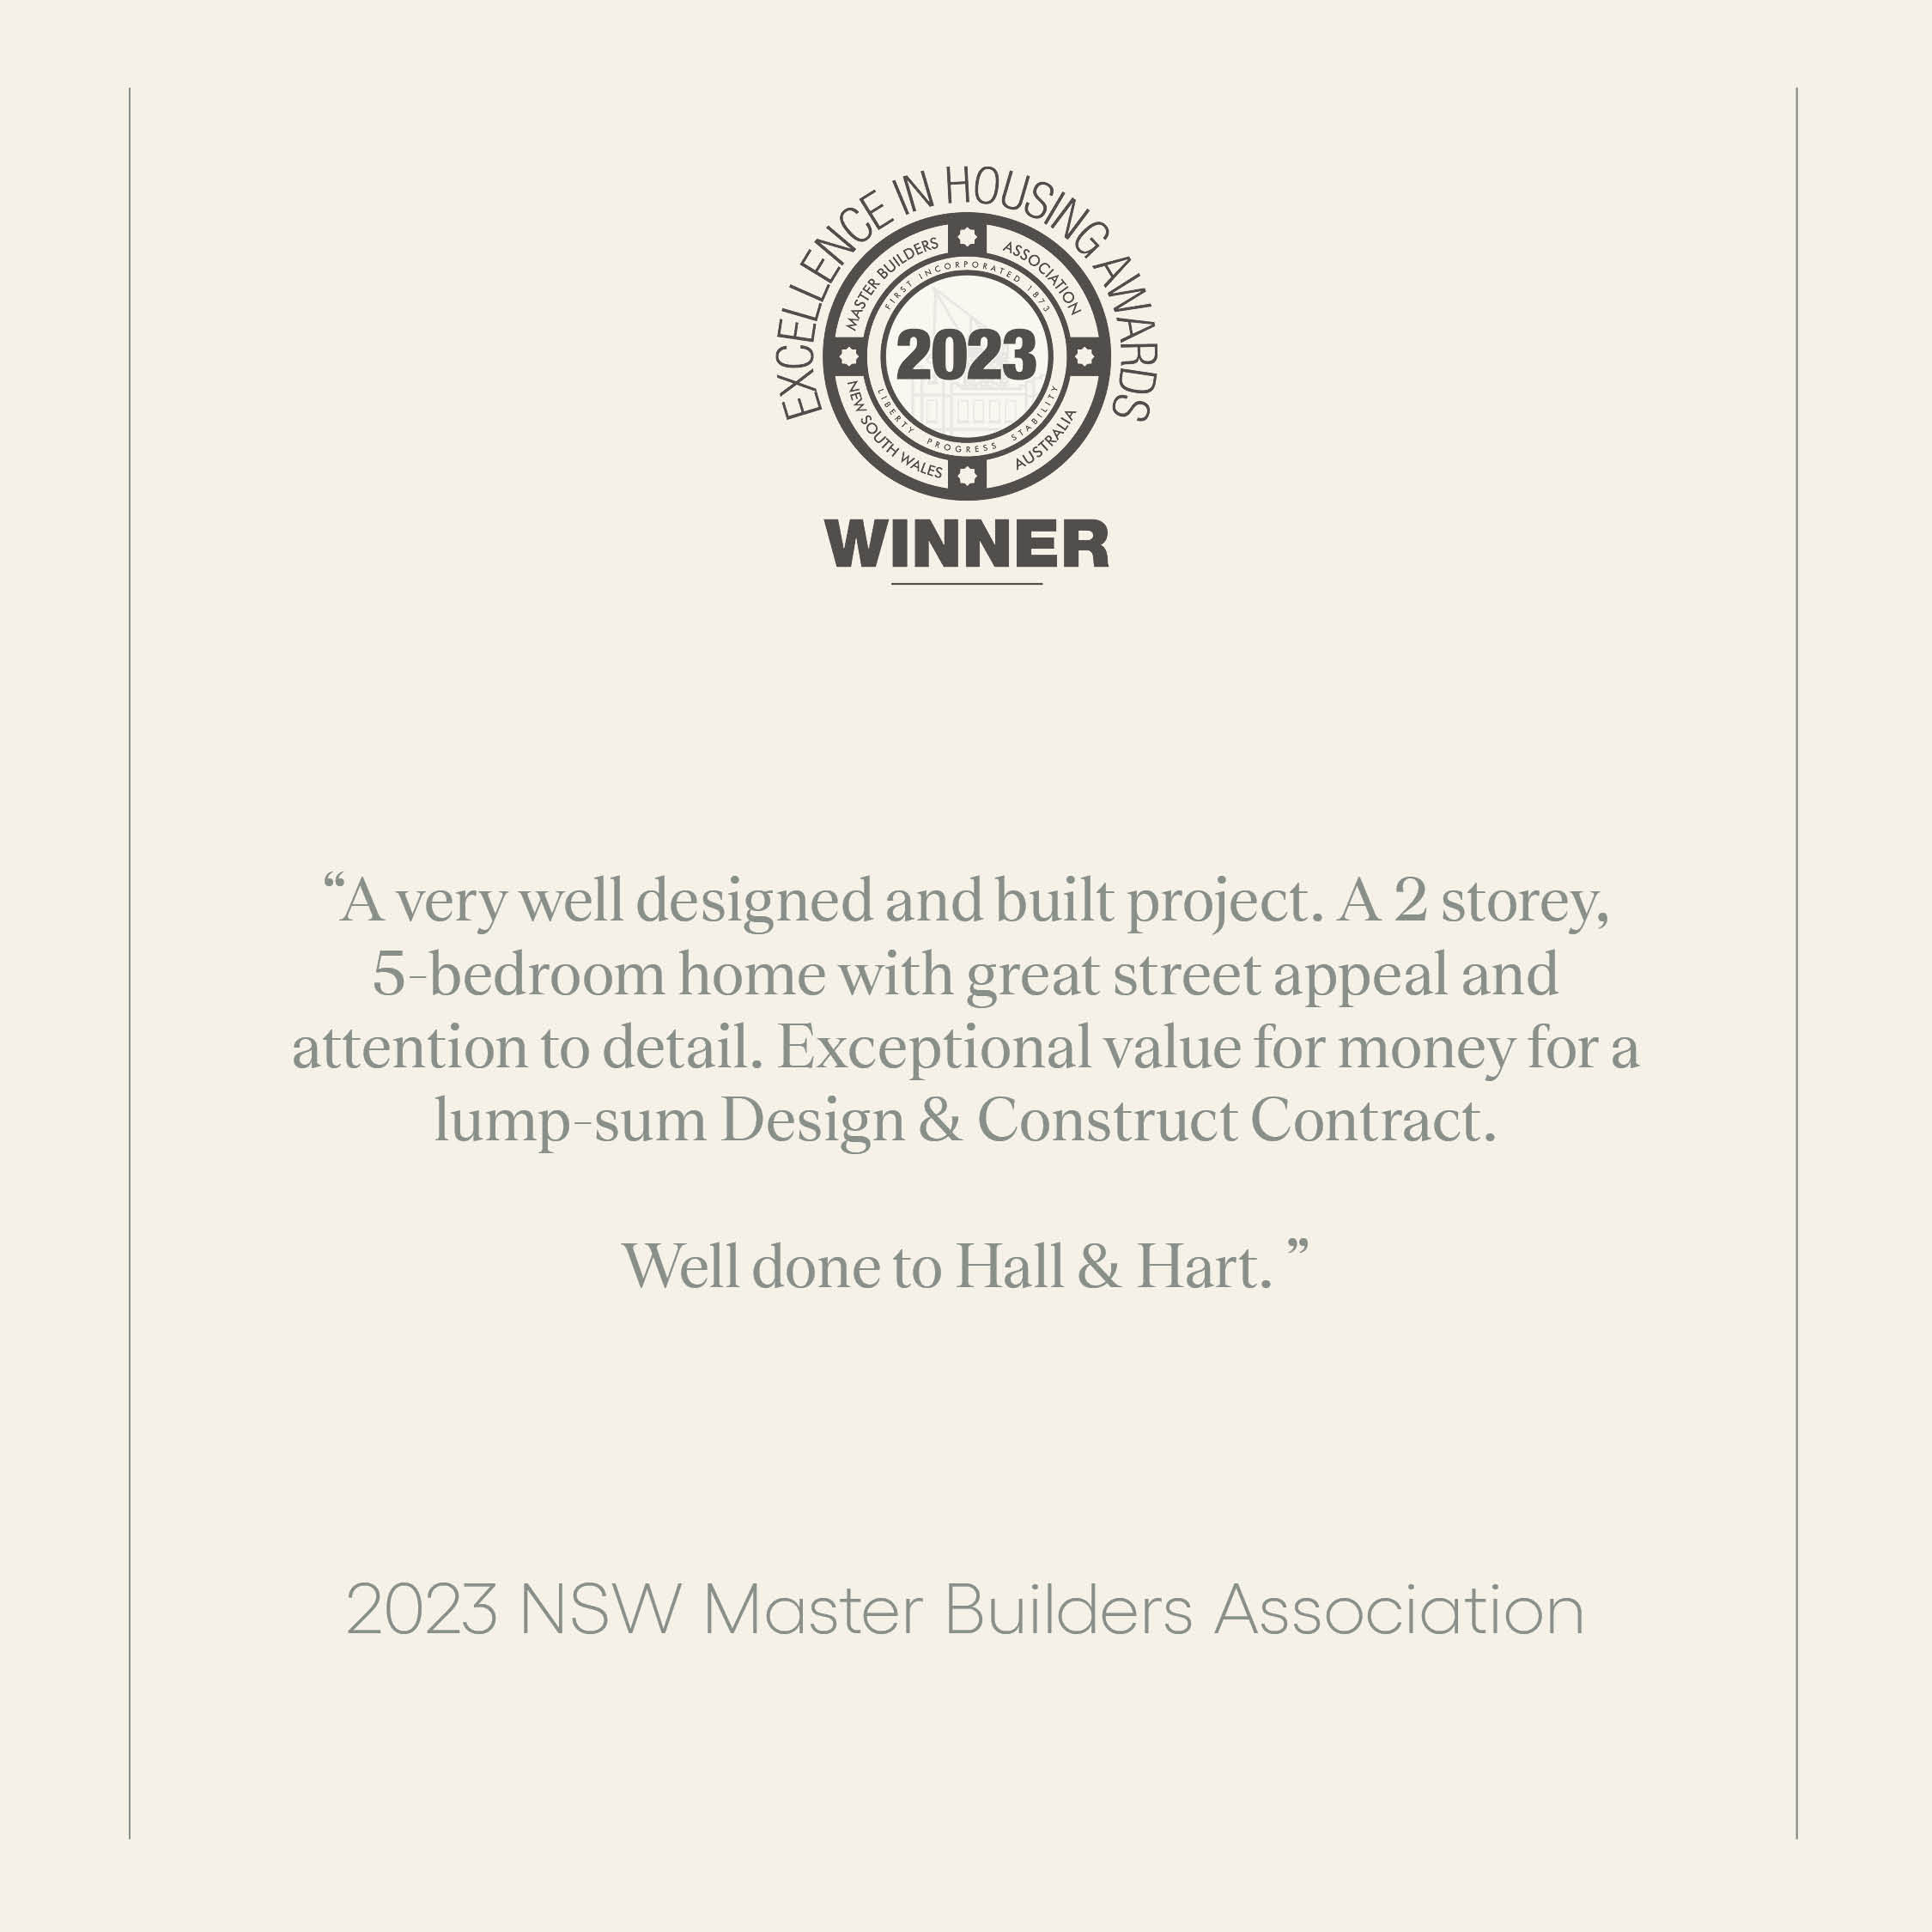 hallhart-MBA-winner